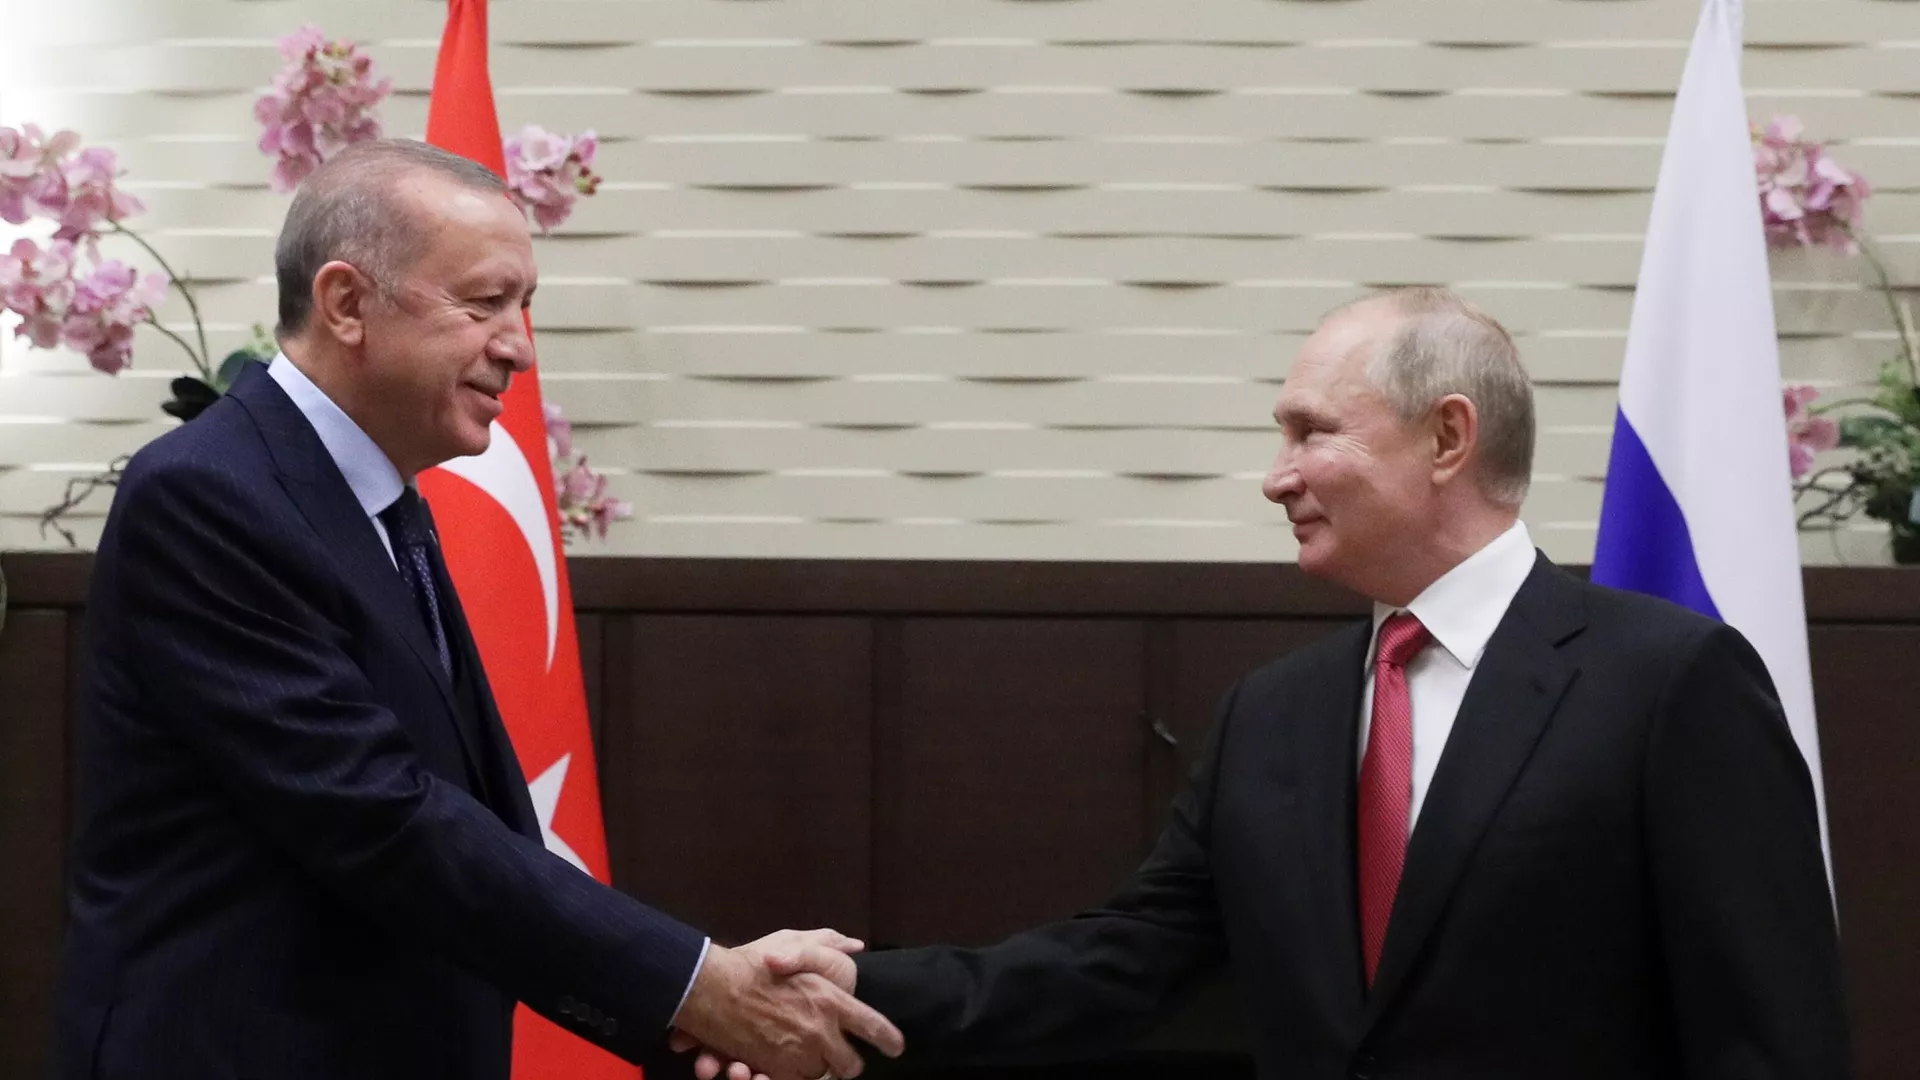 Putin and Erdogan Meeting: What to Expect From Russia-Turkiye Summit?